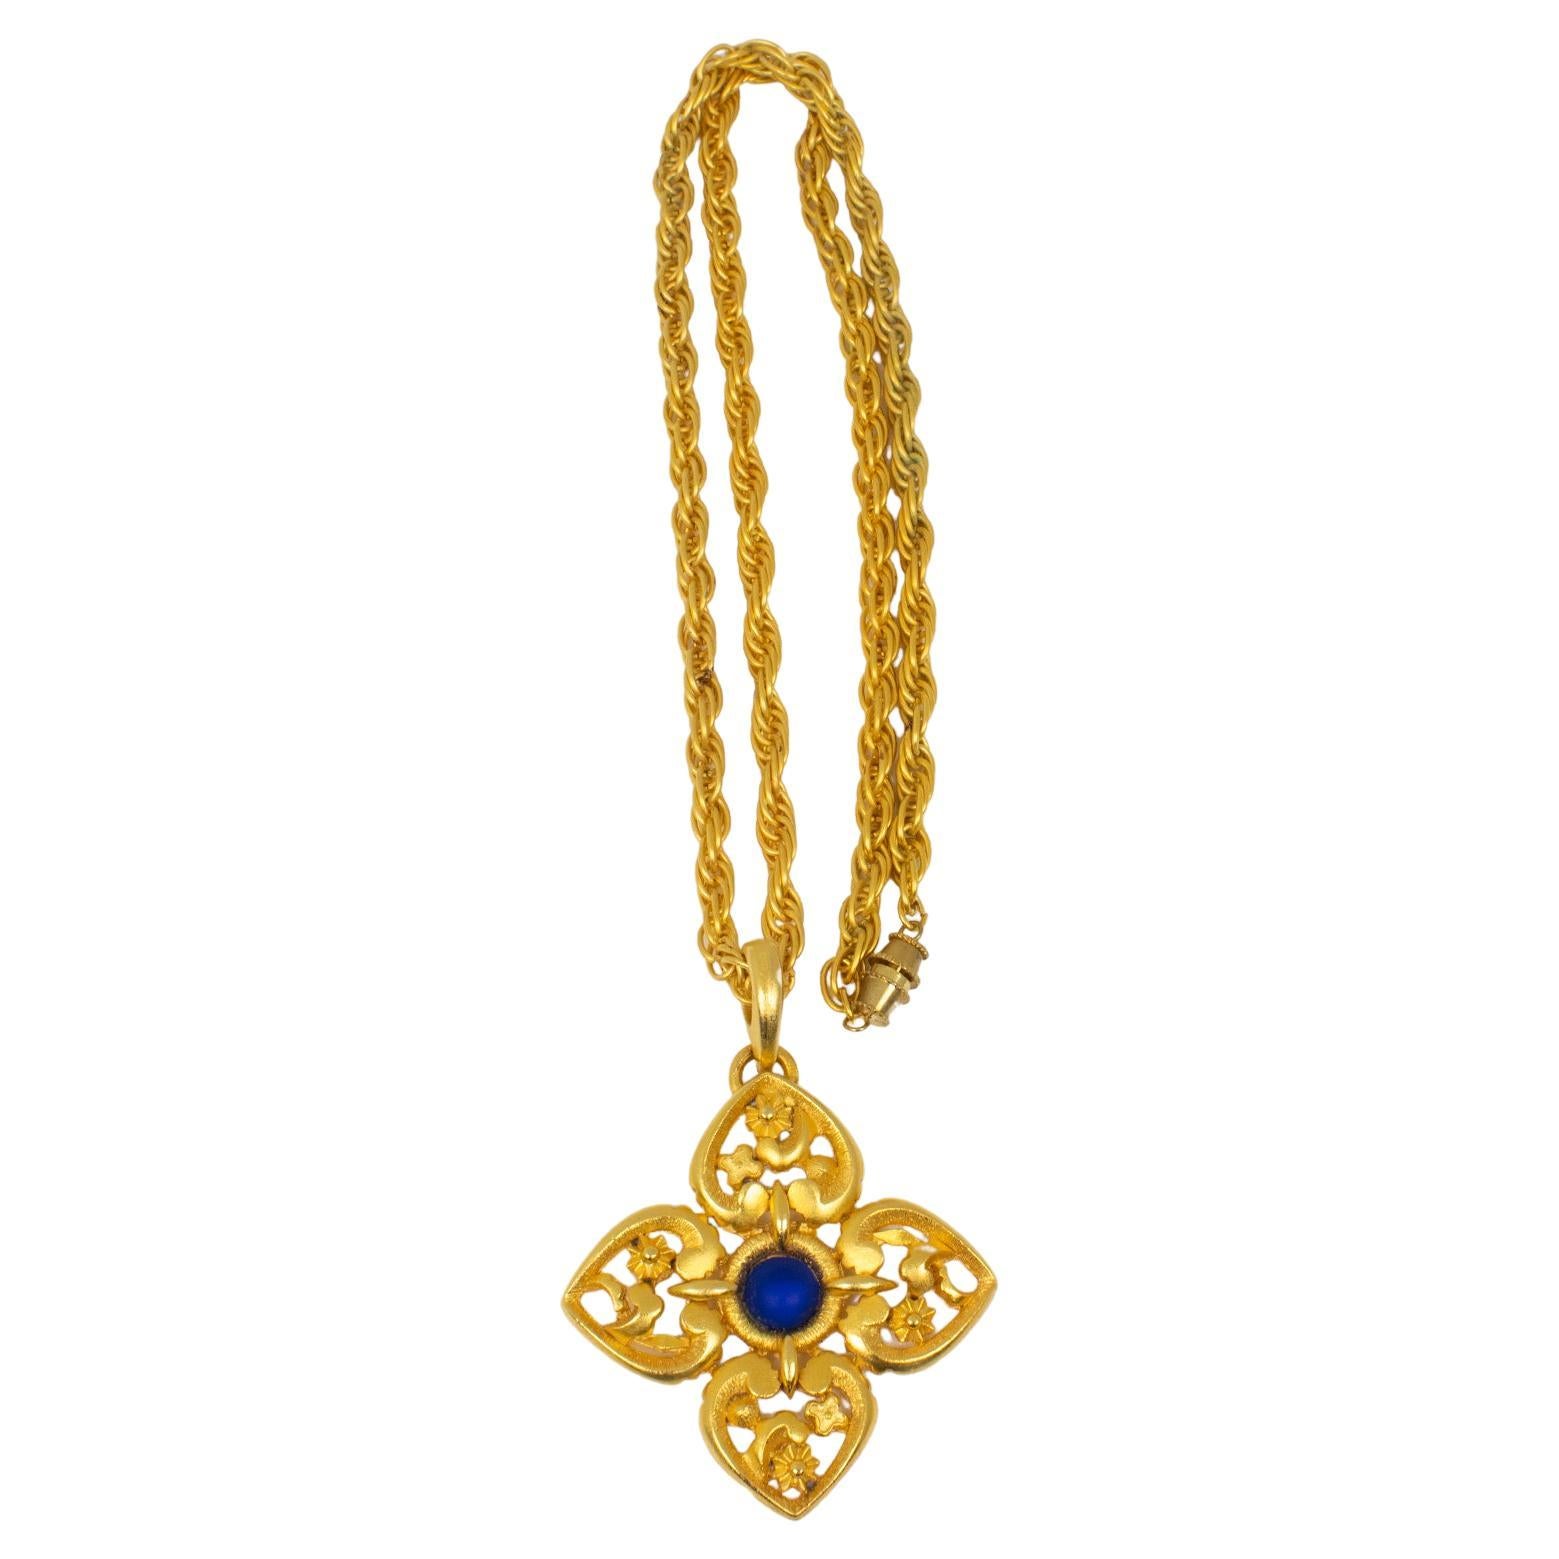 Lanvin Paris Gilt Metal Pendant Necklace with Blue Poured Glass Cabochon For Sale